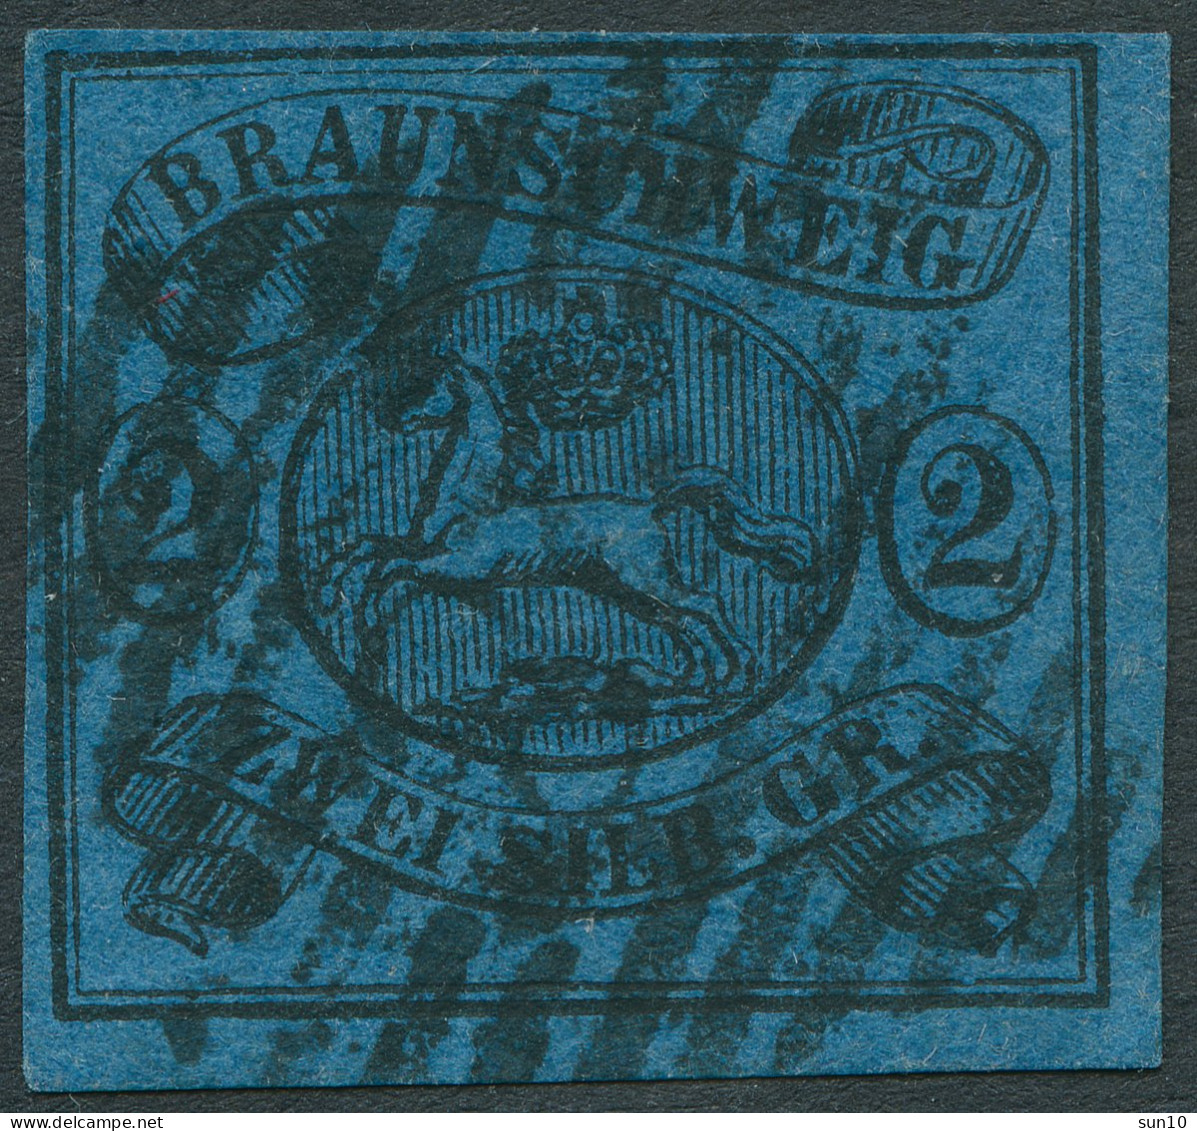 BRAUNSCHWEIG 1853, Nr. 7a. 2 SGR. BLAU, NR-STPL 28 - KÖNIGSLUTTER, CV 100,- - Brunswick